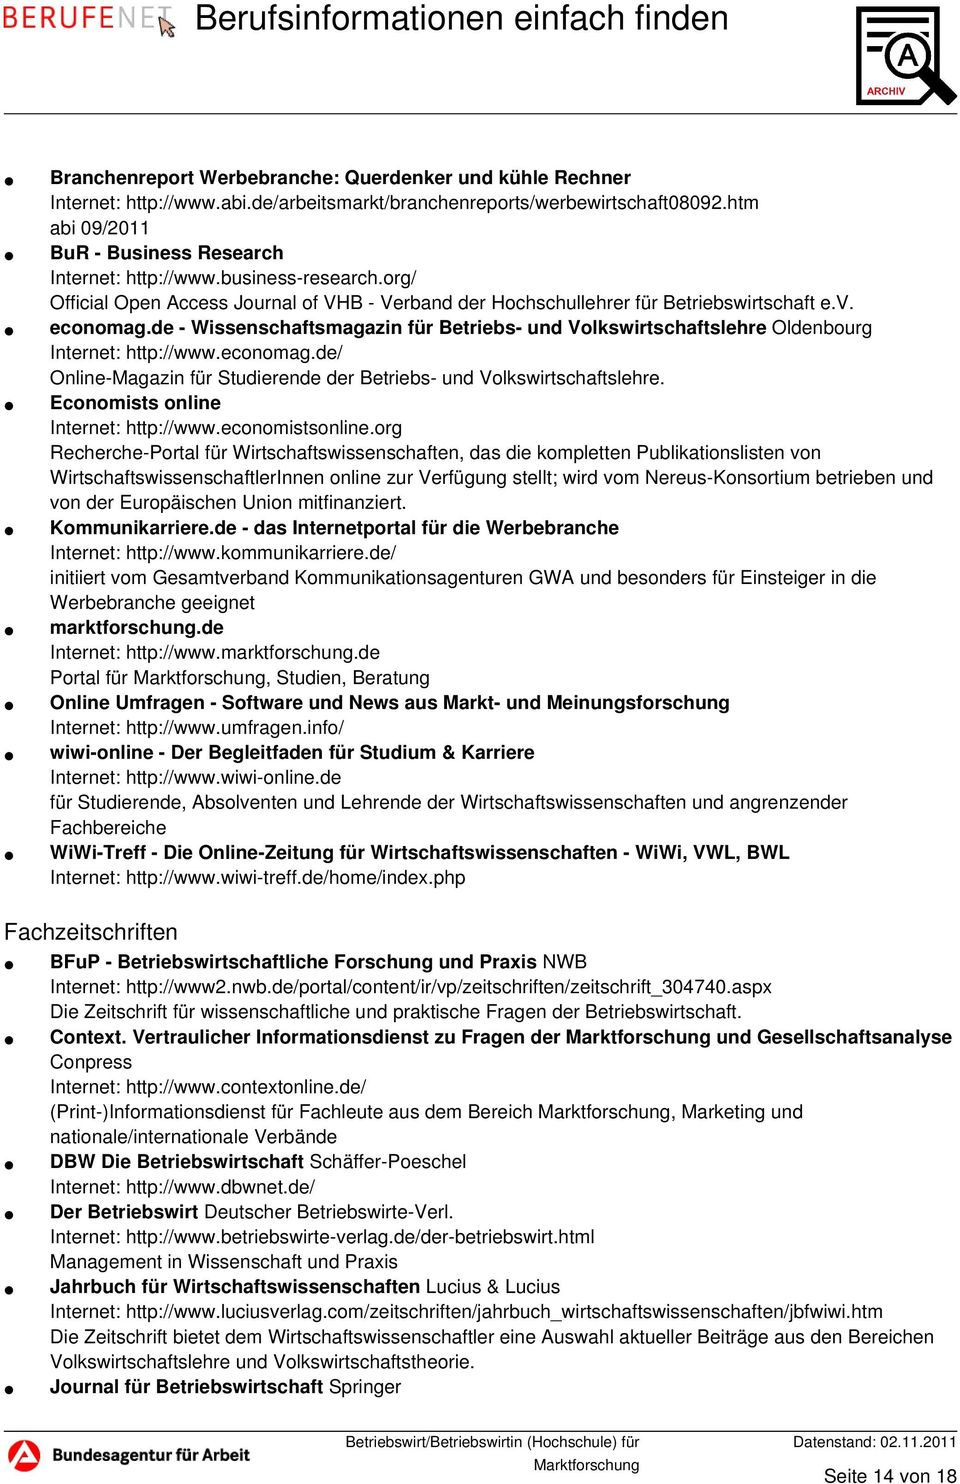 de - Wissenschaftsmagazin für Betriebs- und Volkswirtschaftslehre Oldenbourg Internet: http://www.economag.de/ Online-Magazin für Studierende der Betriebs- und Volkswirtschaftslehre.